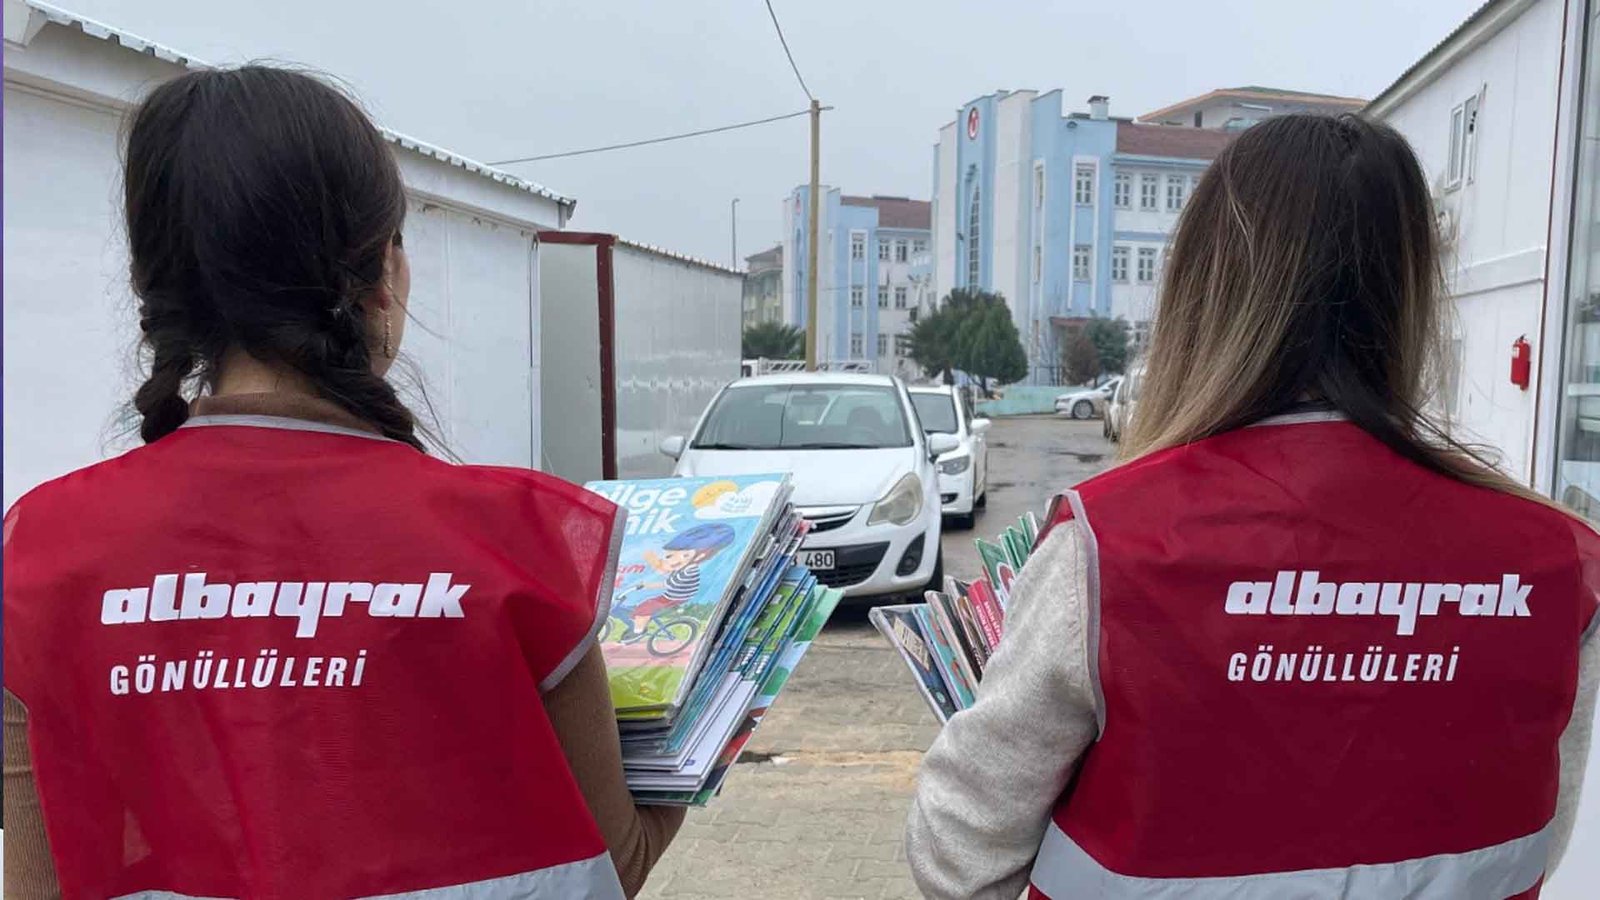 Albayrak Grubu, 206 Milyon TL Maddi Yardım İle Deprem Mağdurlarına Ulaşıyor